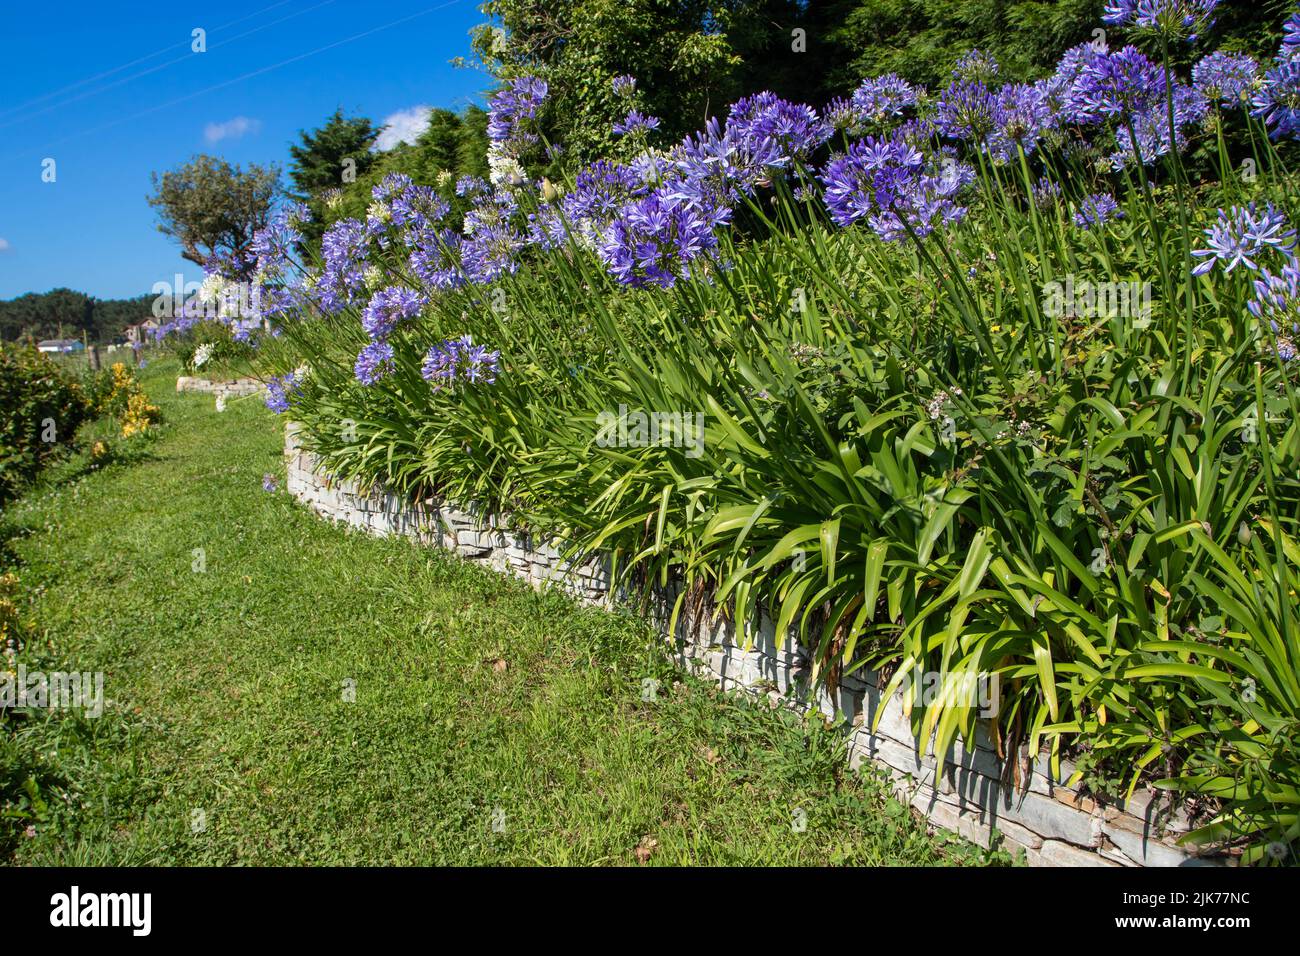 Agapanthus o lirio del Nilo o lirio africano flores azules y blancas en la pared de retención de piedra enmarcando el camino del césped en el jardín Foto de stock